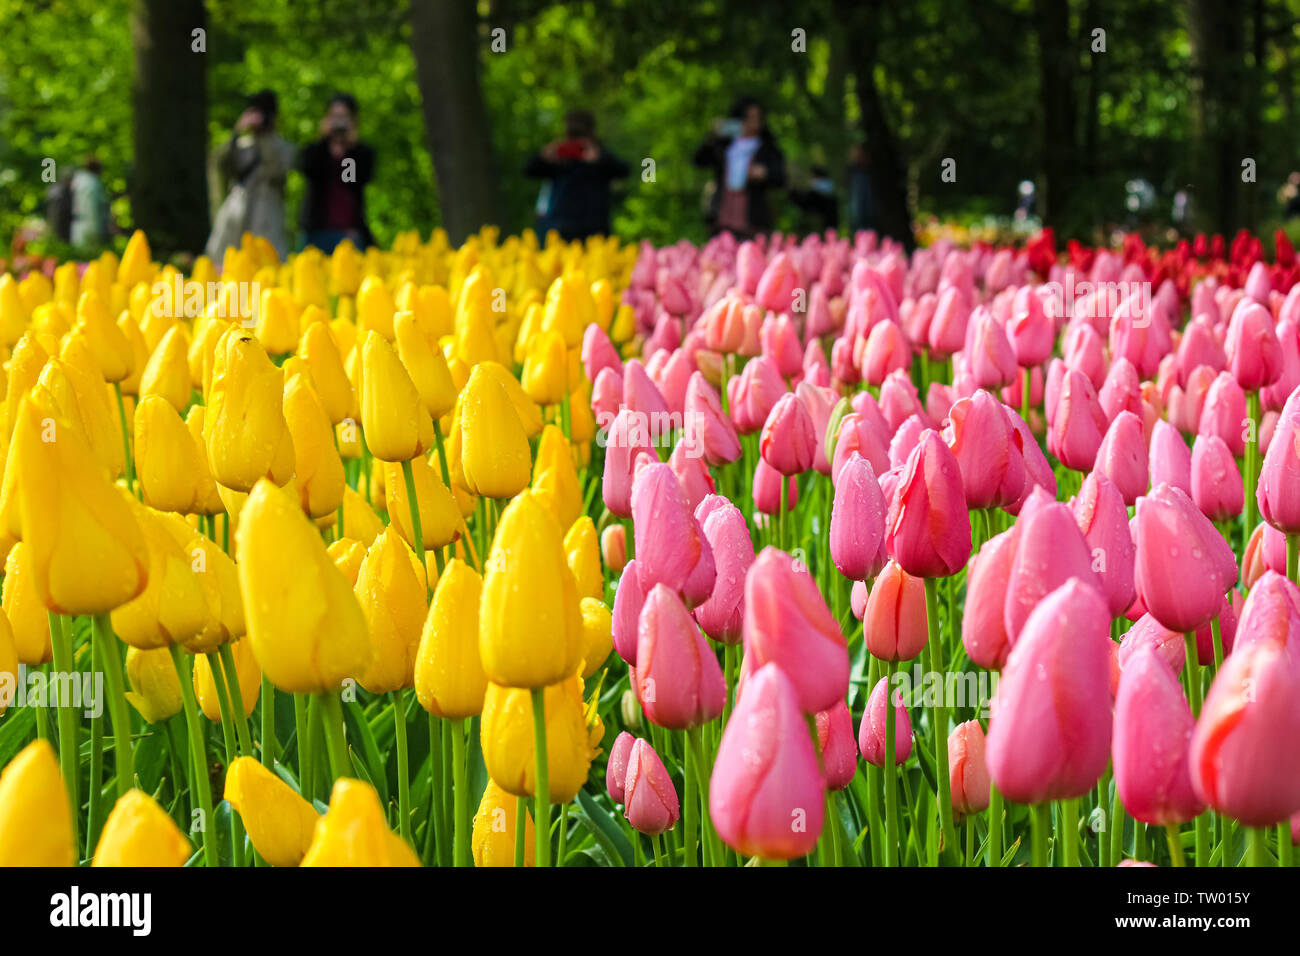 Détail de belles tulipes jaune et rose avec des personnes floues en arrière-plan. Fleurs tulipes sont de grandes attractions touristiques néerlandais et symbole de la Hollande. Pays-bas concept. Jardin, Parc. Banque D'Images